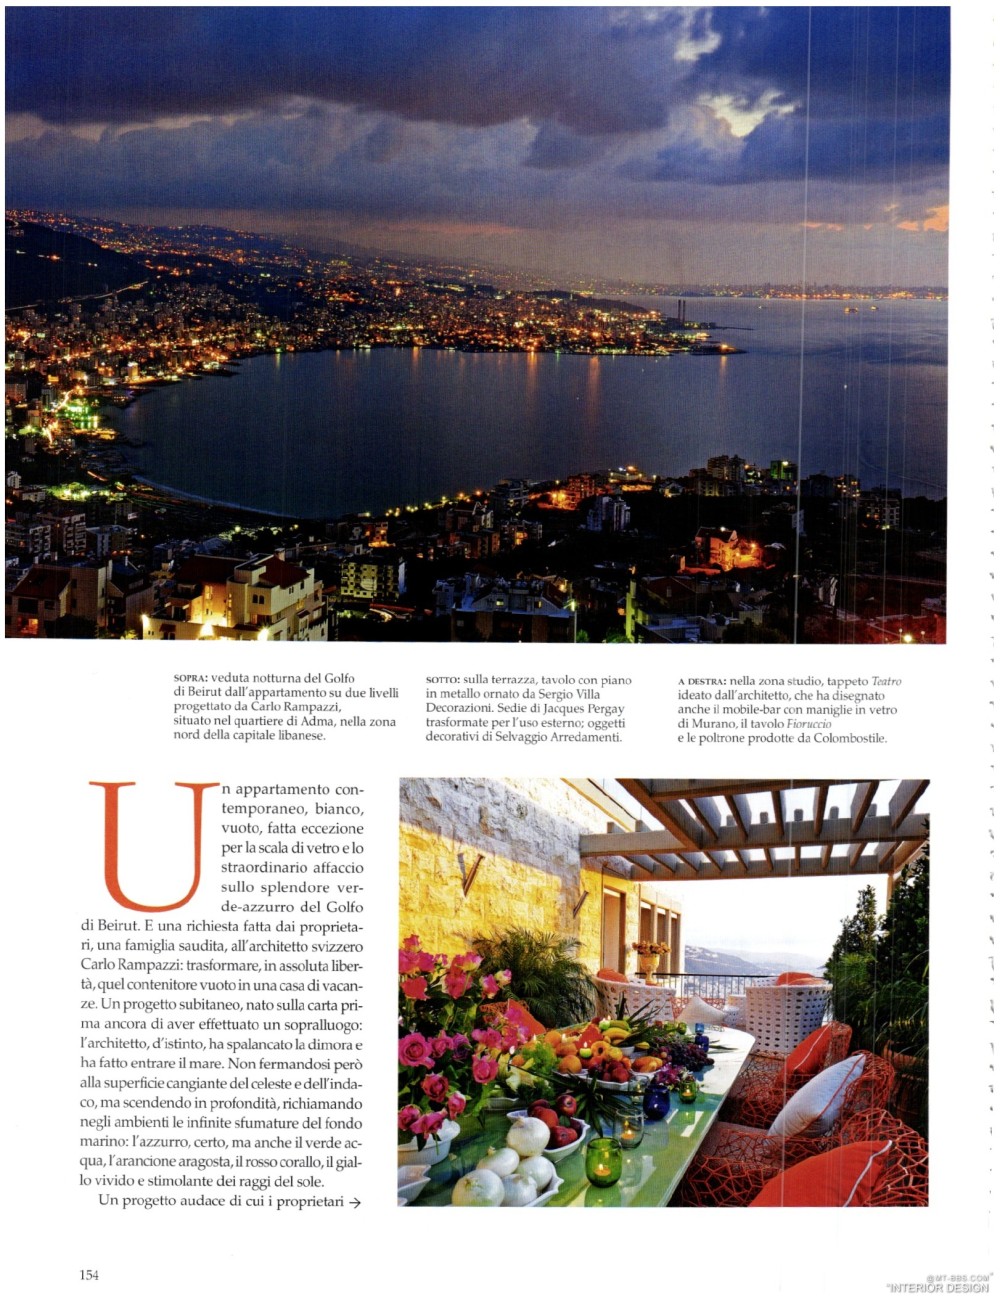 意大利AD 杂志 2012年全年JPG高清版本 全免（上传完毕）_0156.jpg